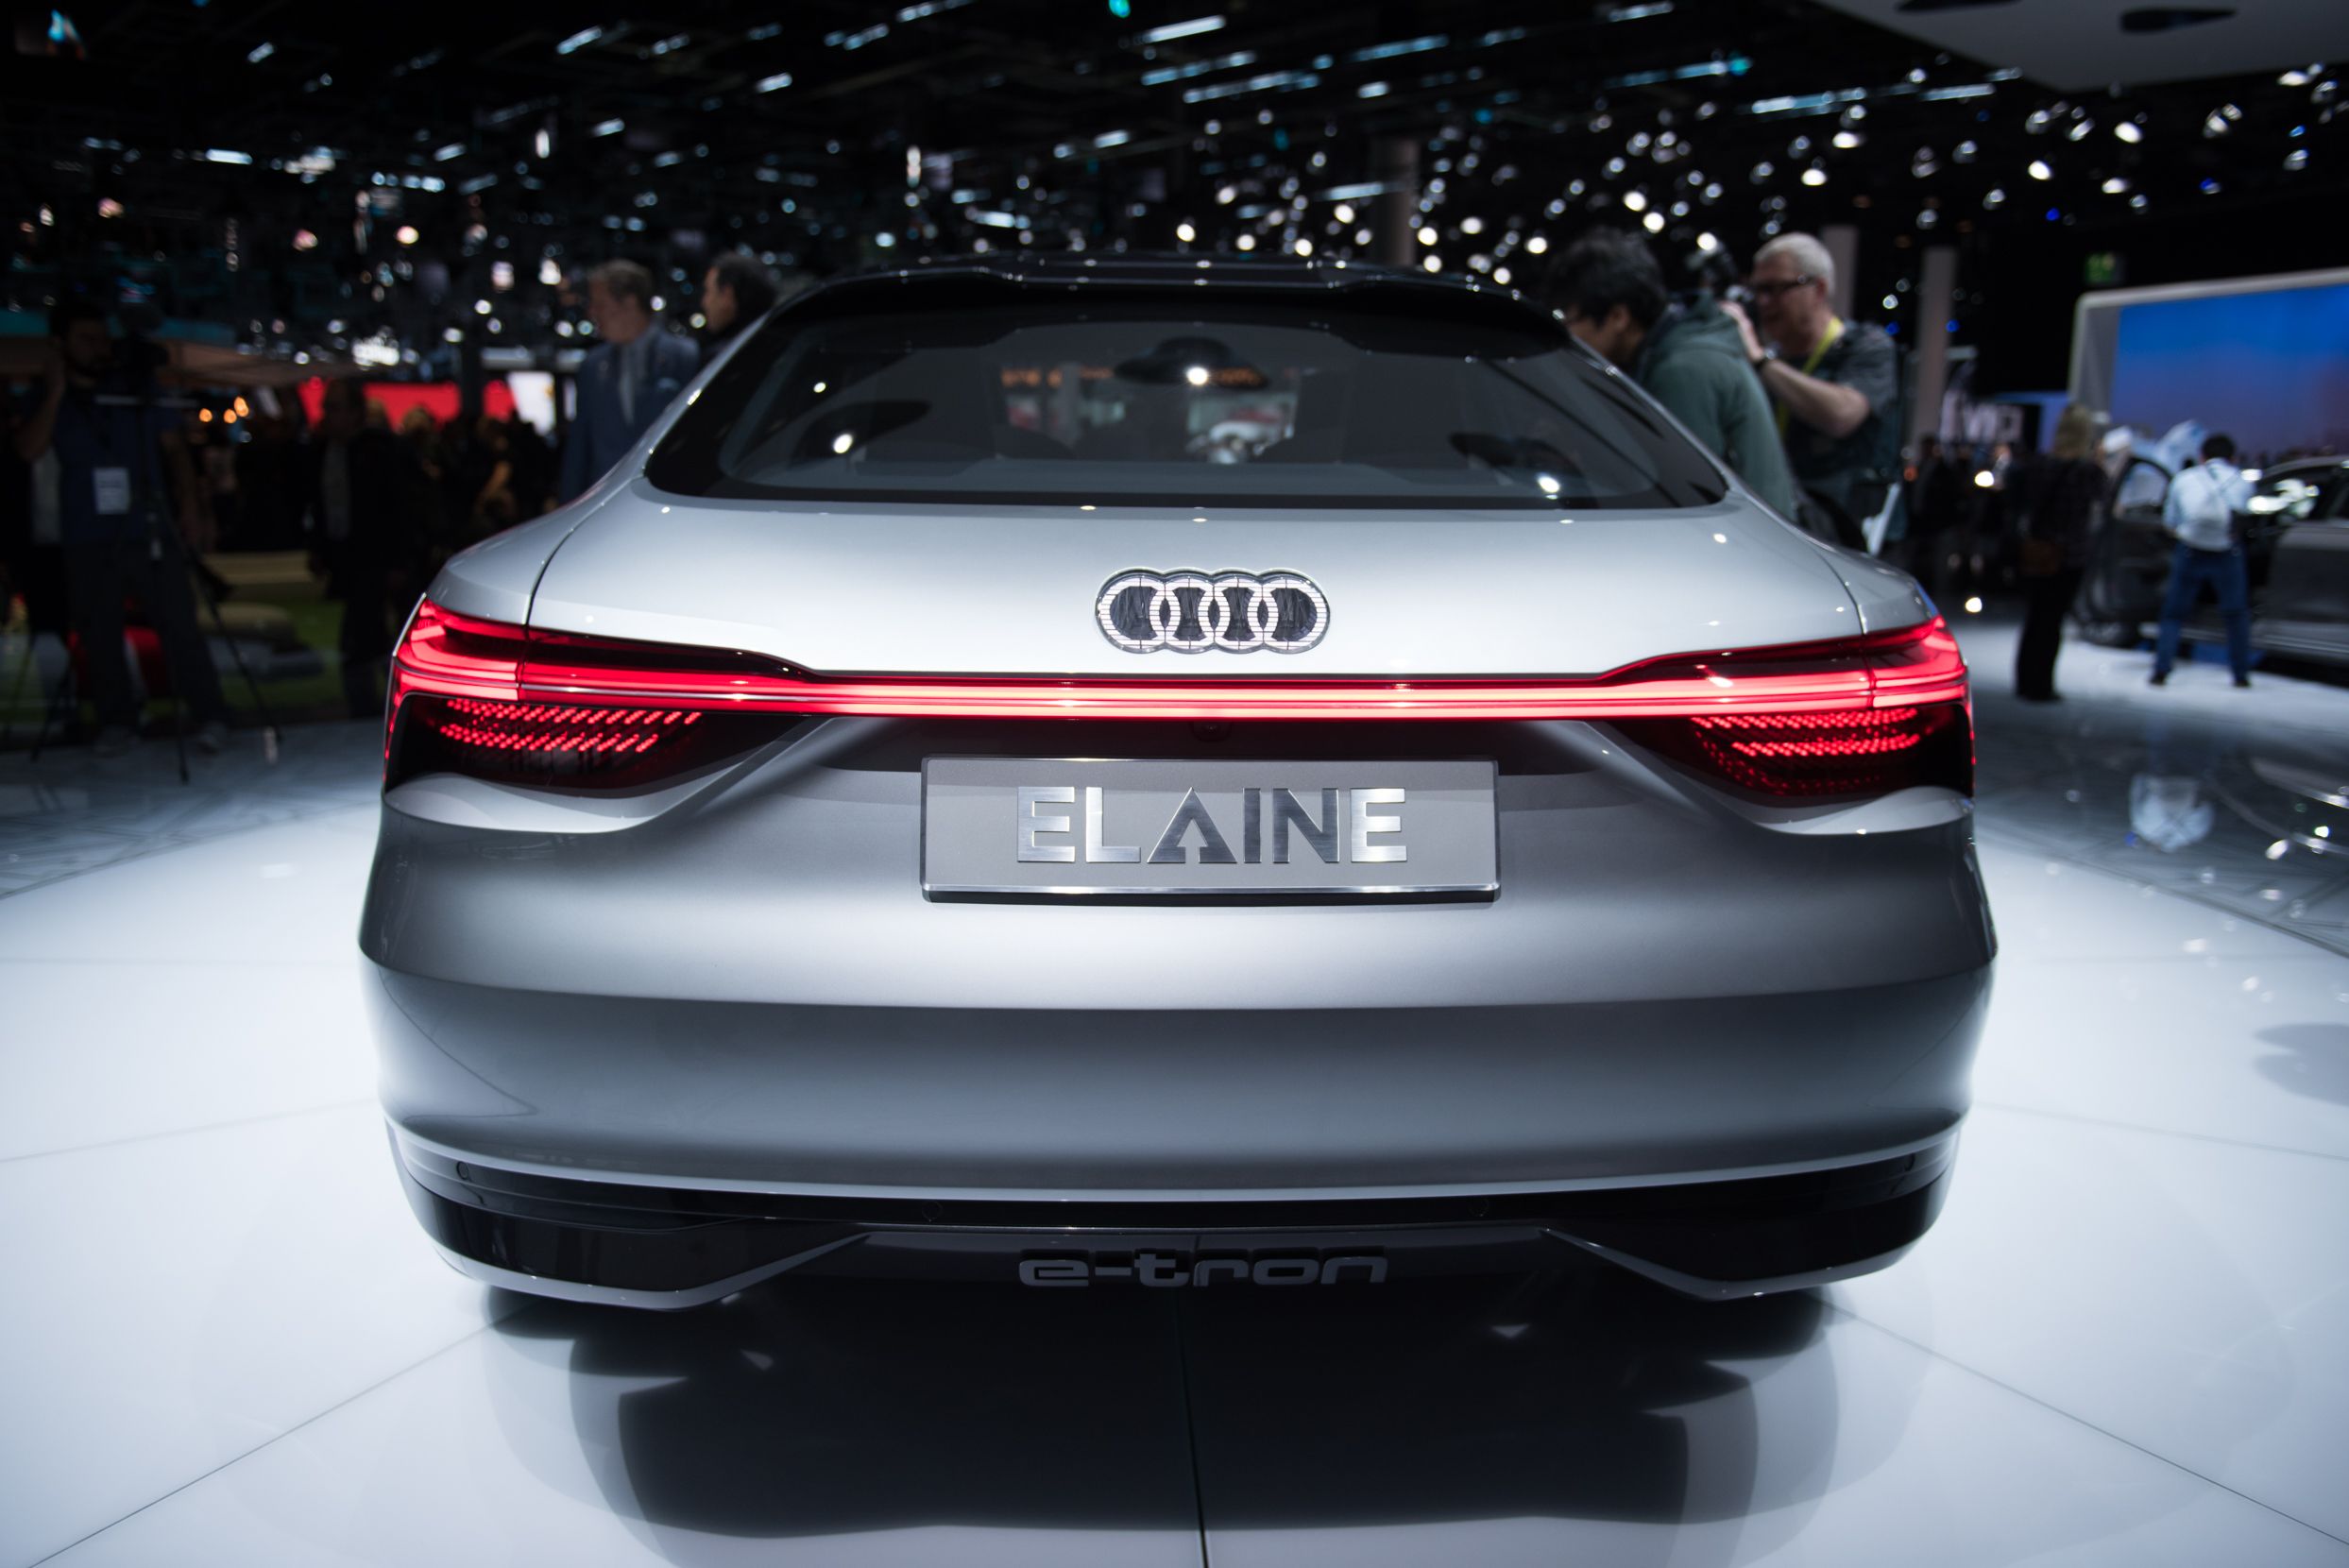 2017 Audi Elaine